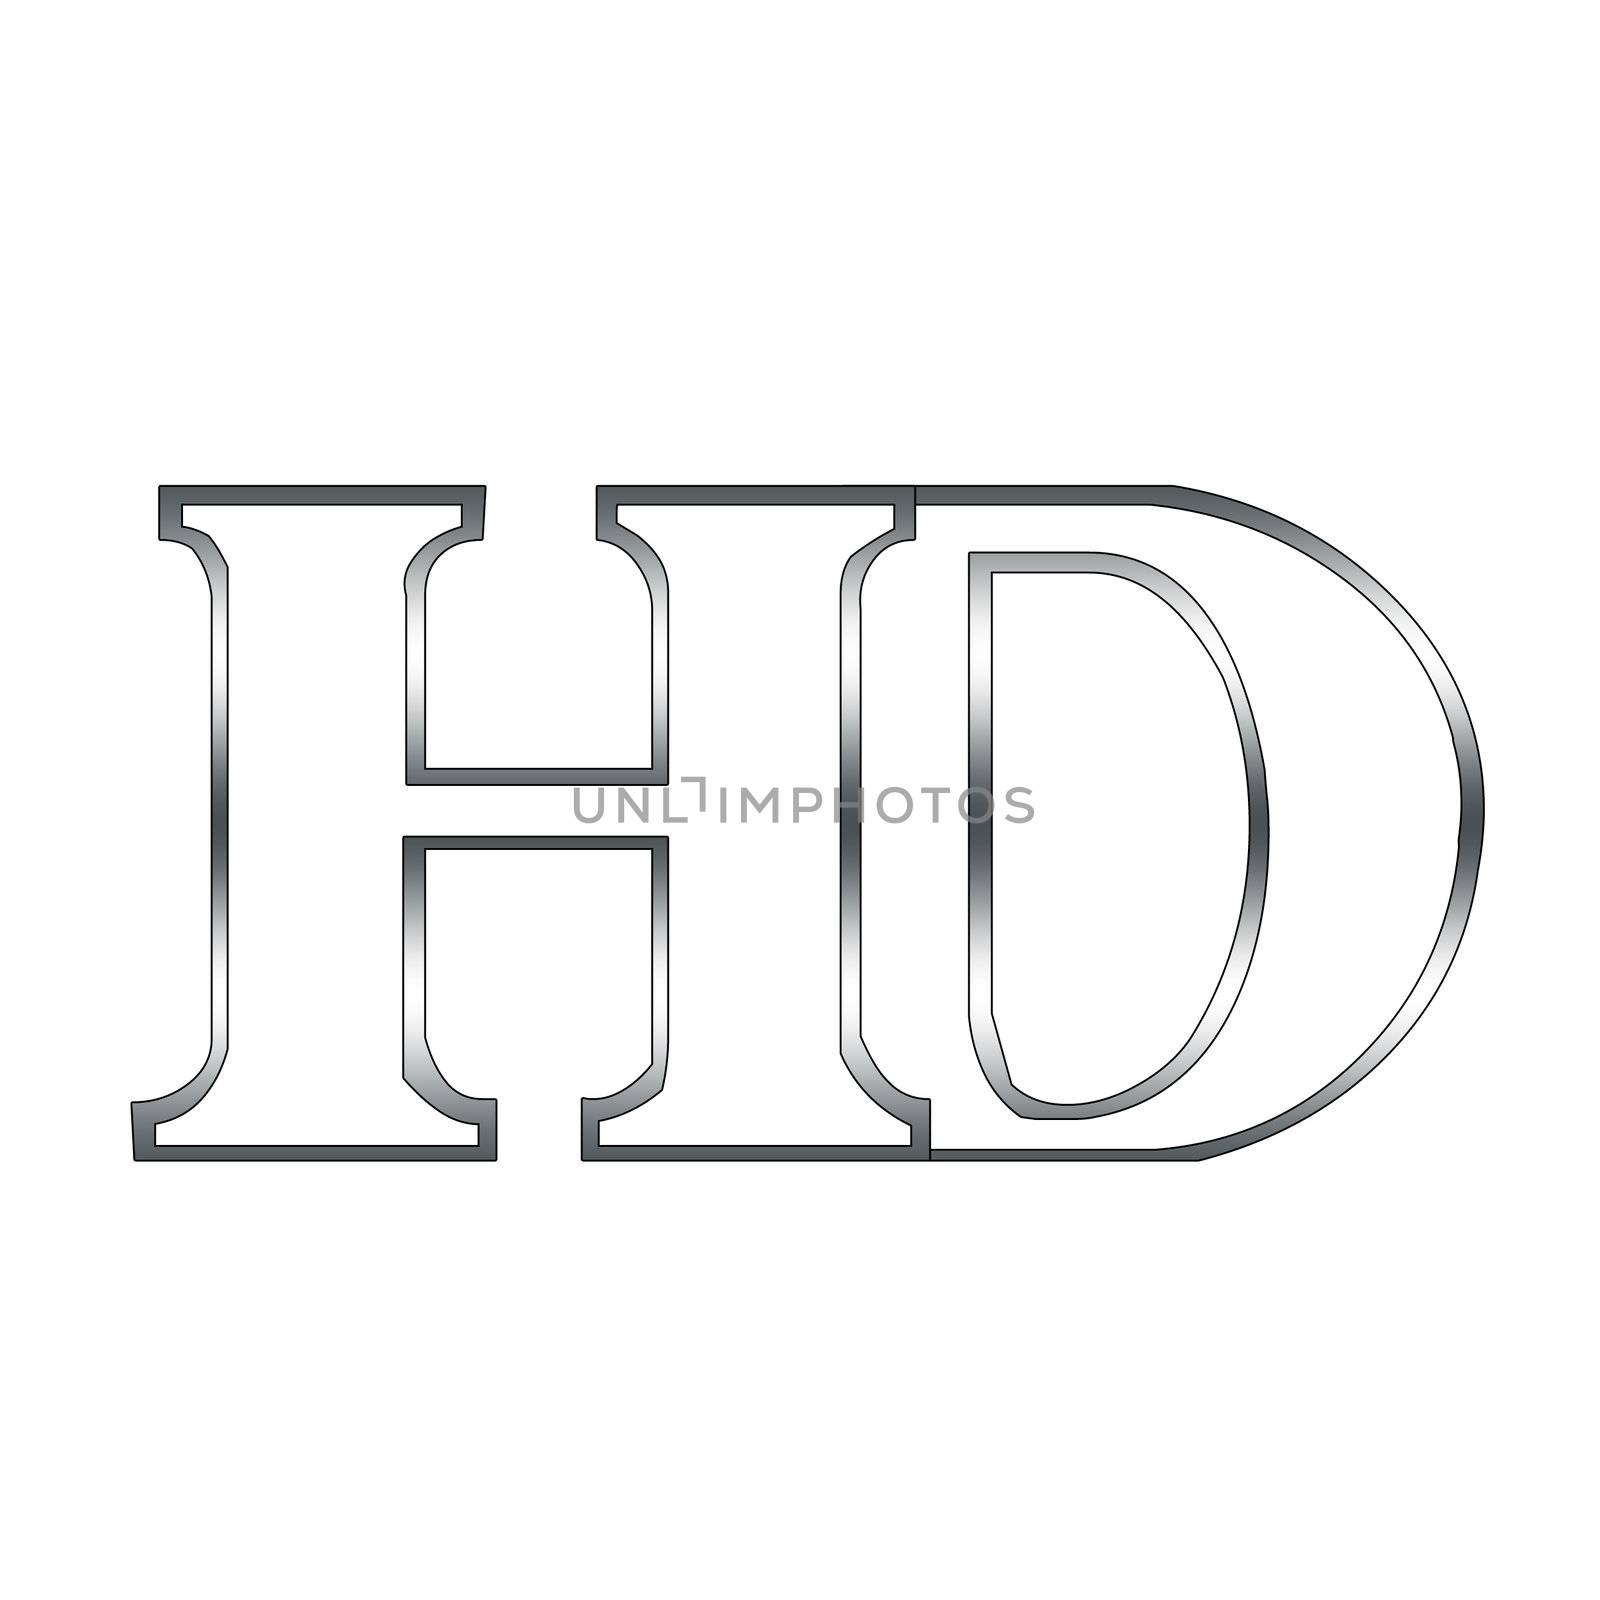 H and D logo by shawlinmohd